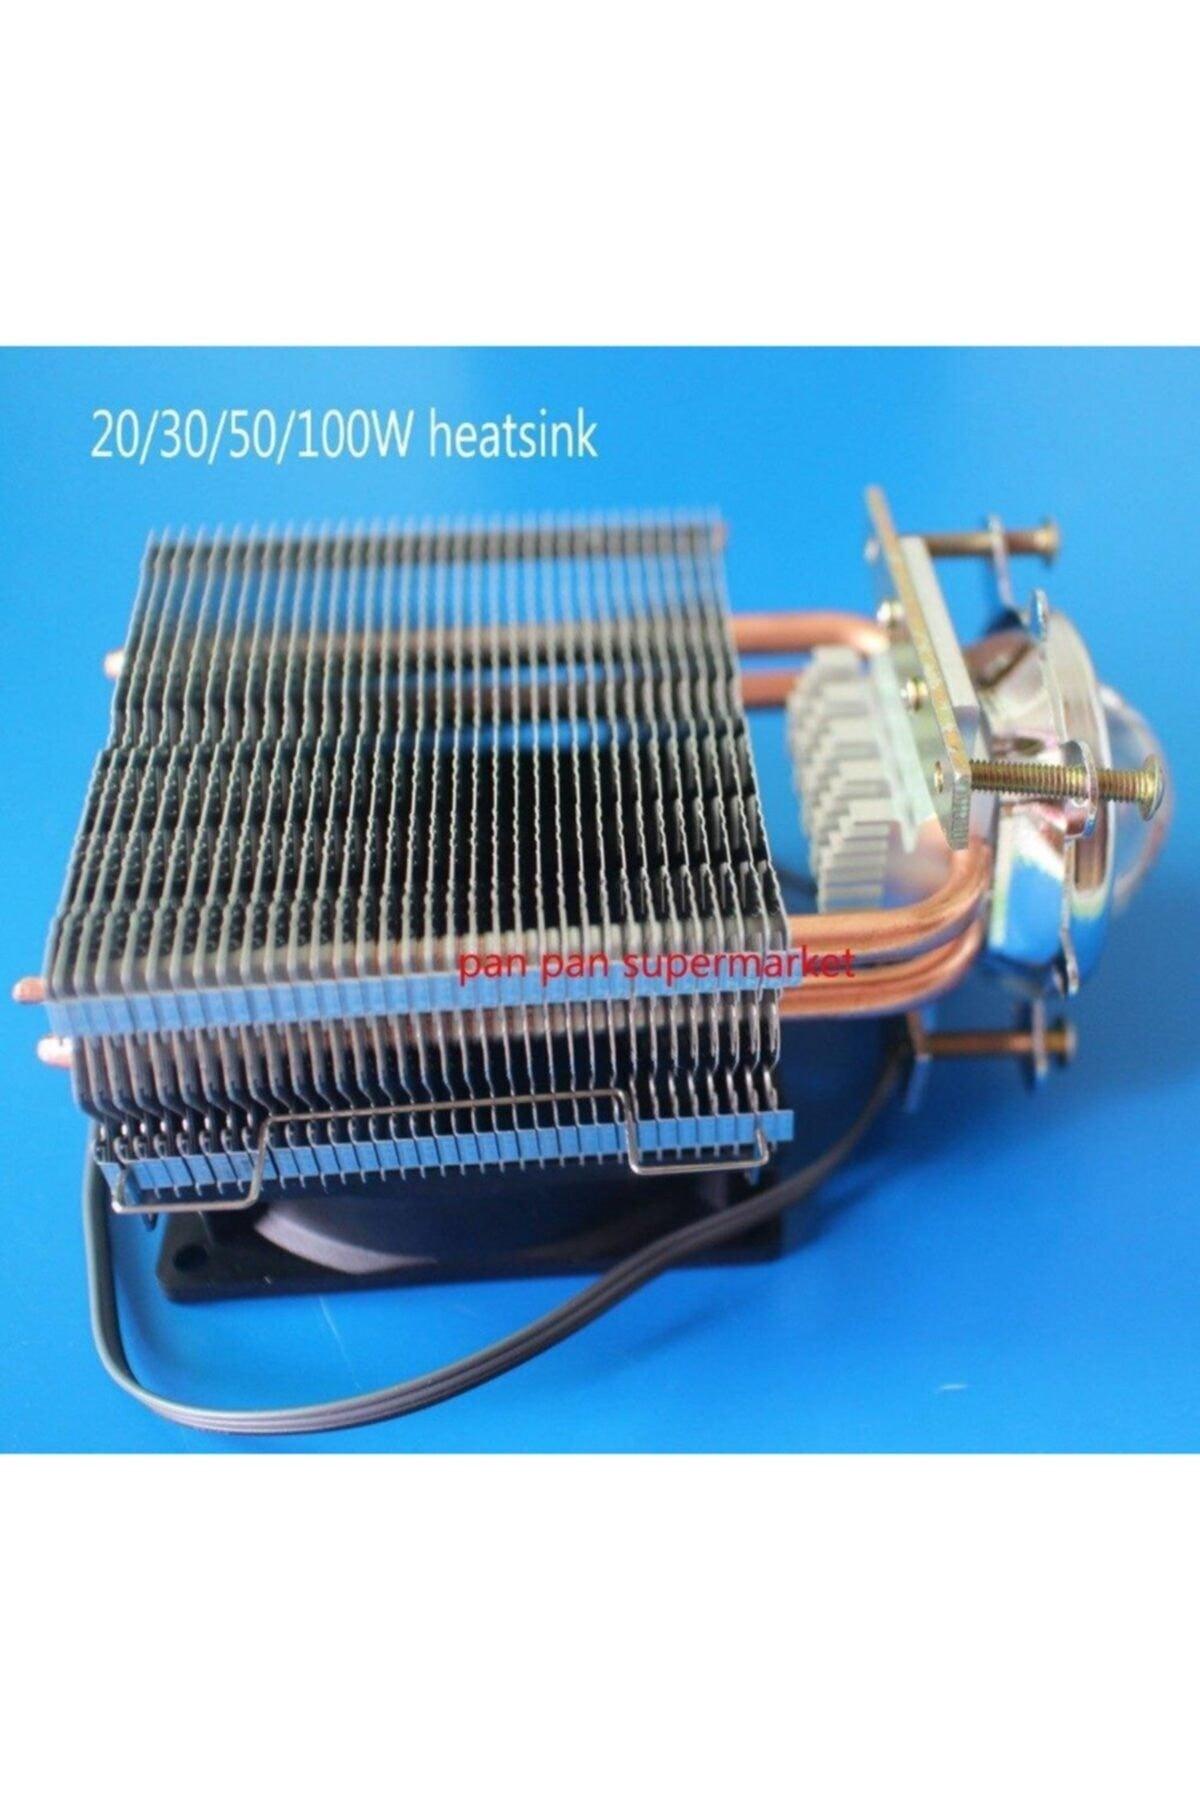 20w-100w Heat Sink Aluminum Fan For Led